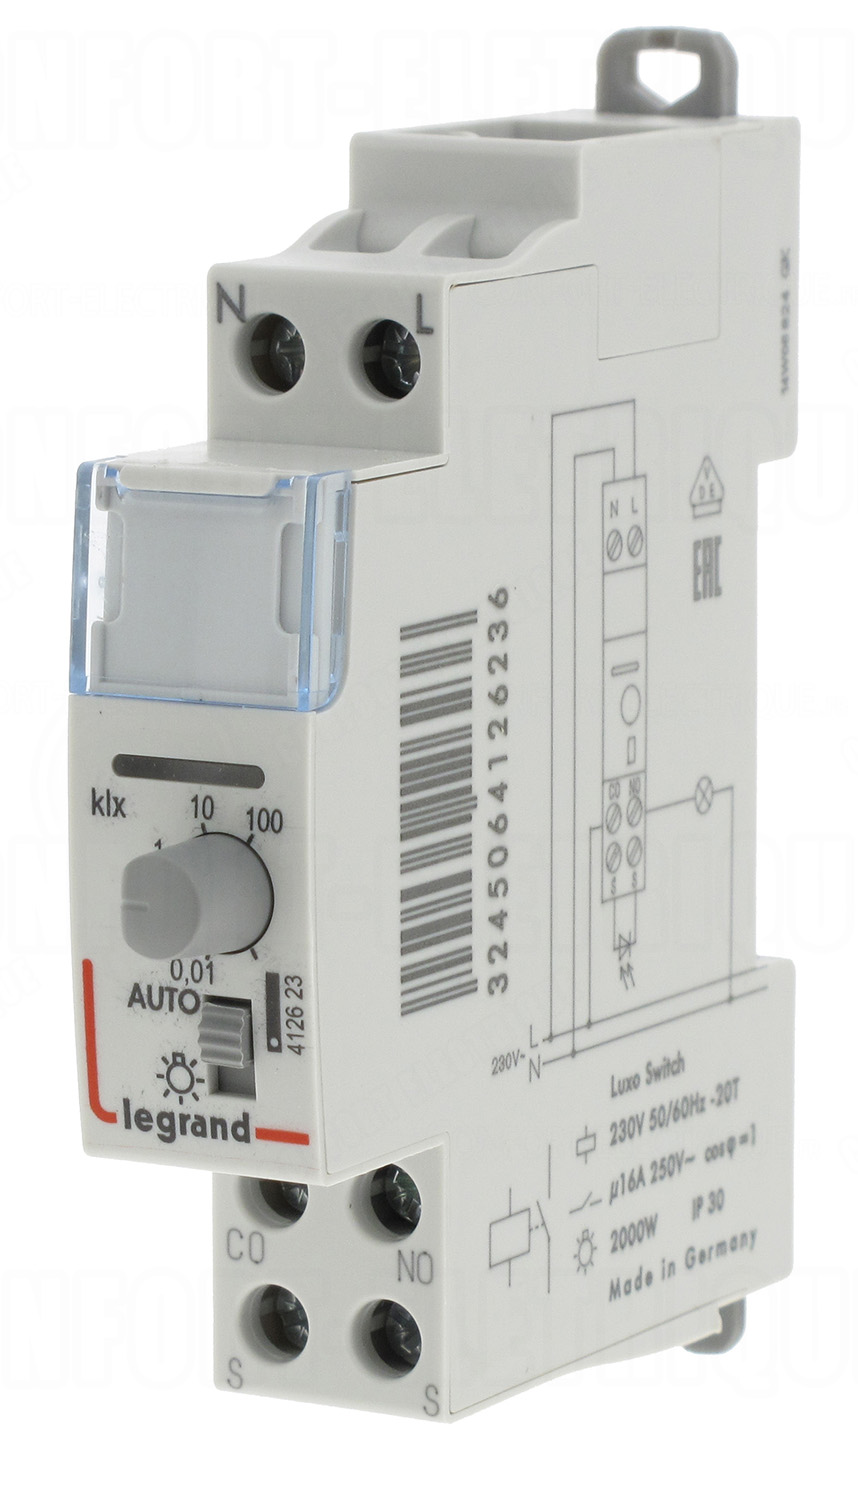 Interrupteur crépusculaire standard 16A 250V - Legrand 41262..